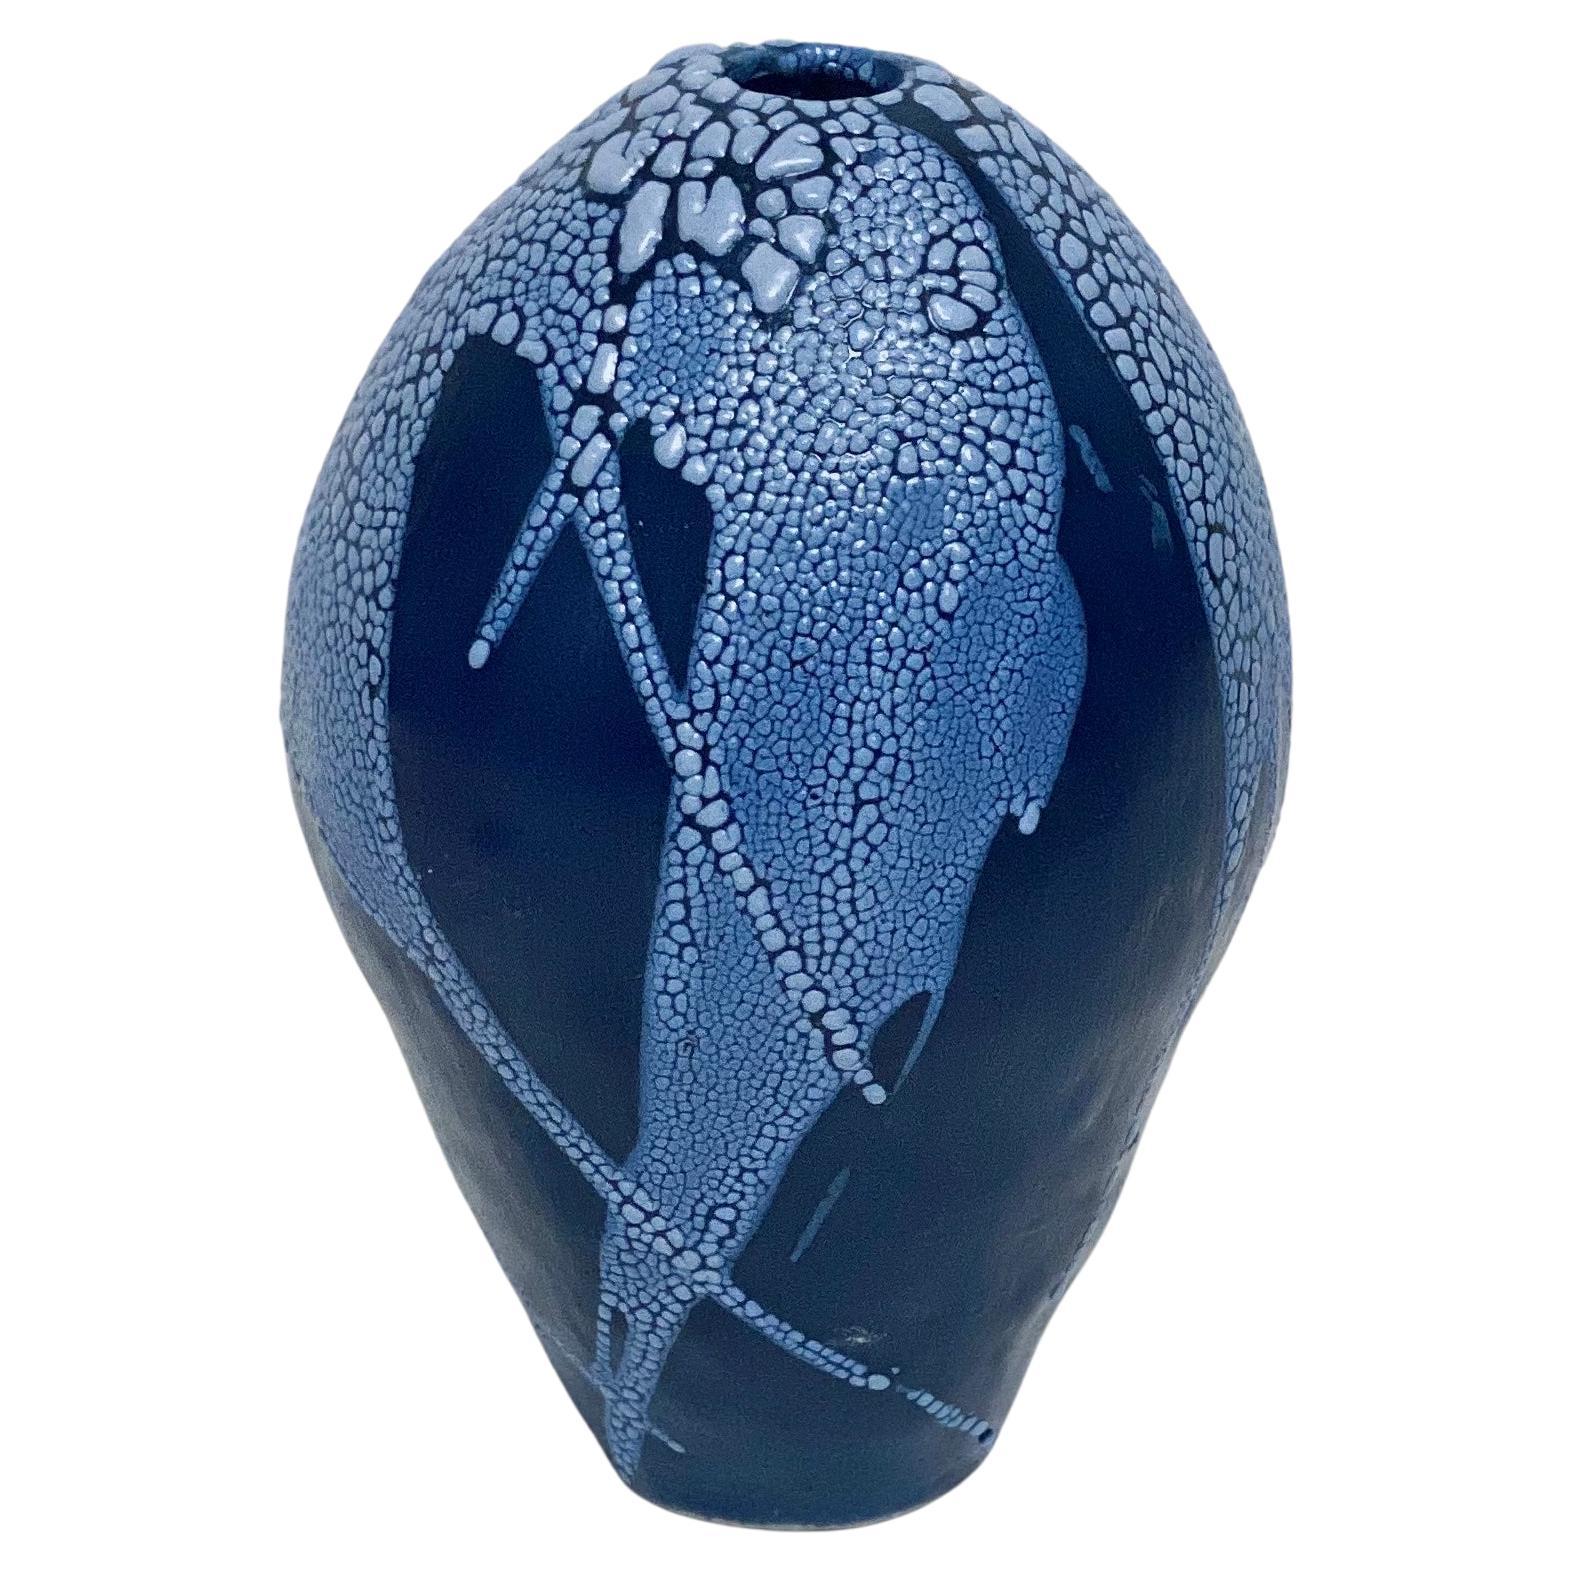 Blau/Blaue Drachenei-Vase von Astrid Öhman